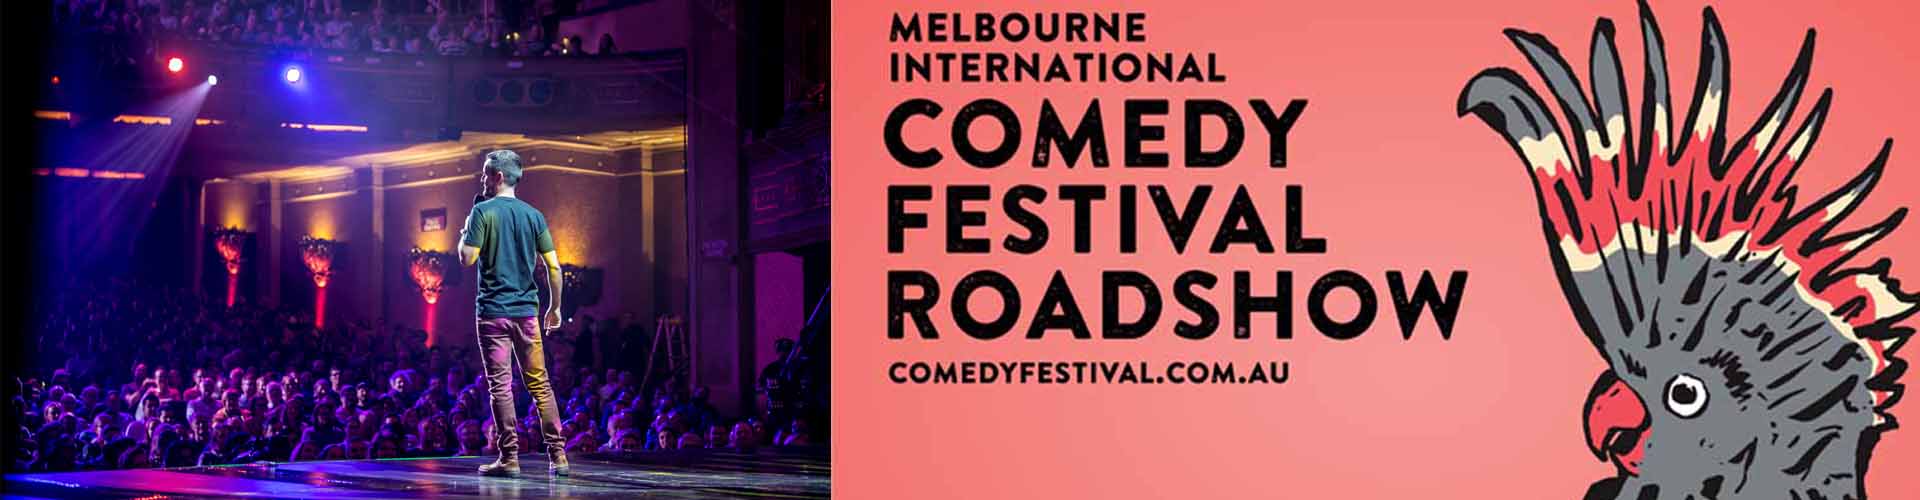  Melbourne Comedy Festival Roadshow